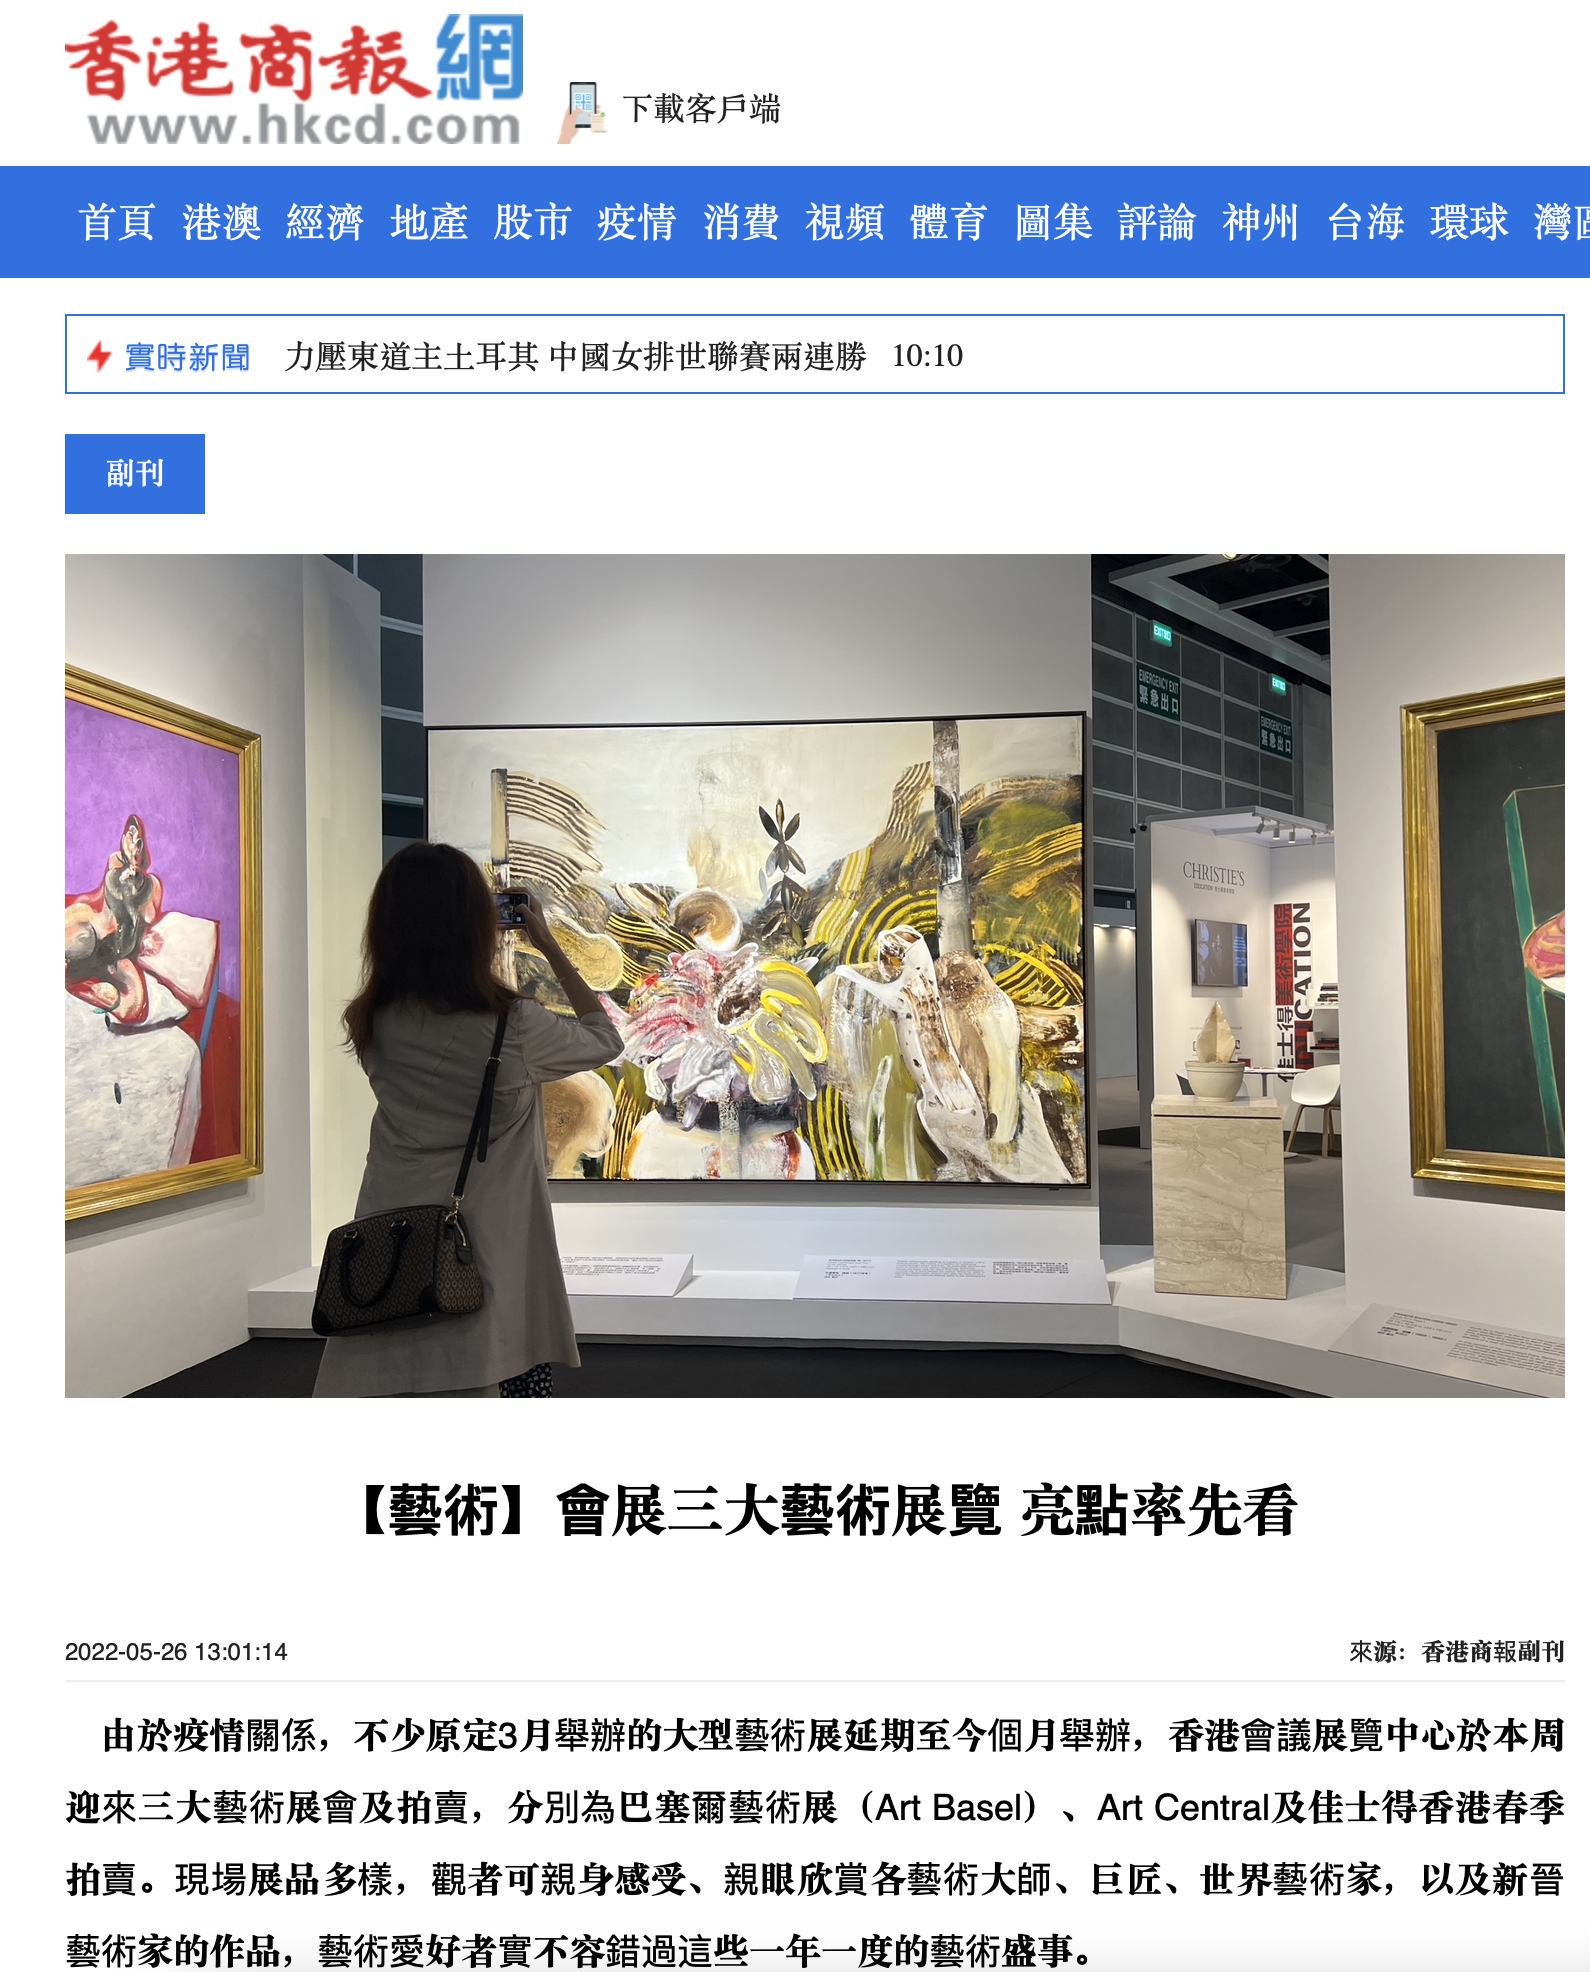 【藝術】會展三大藝術展覽 亮點率先看 (來源：香港商報副刊)